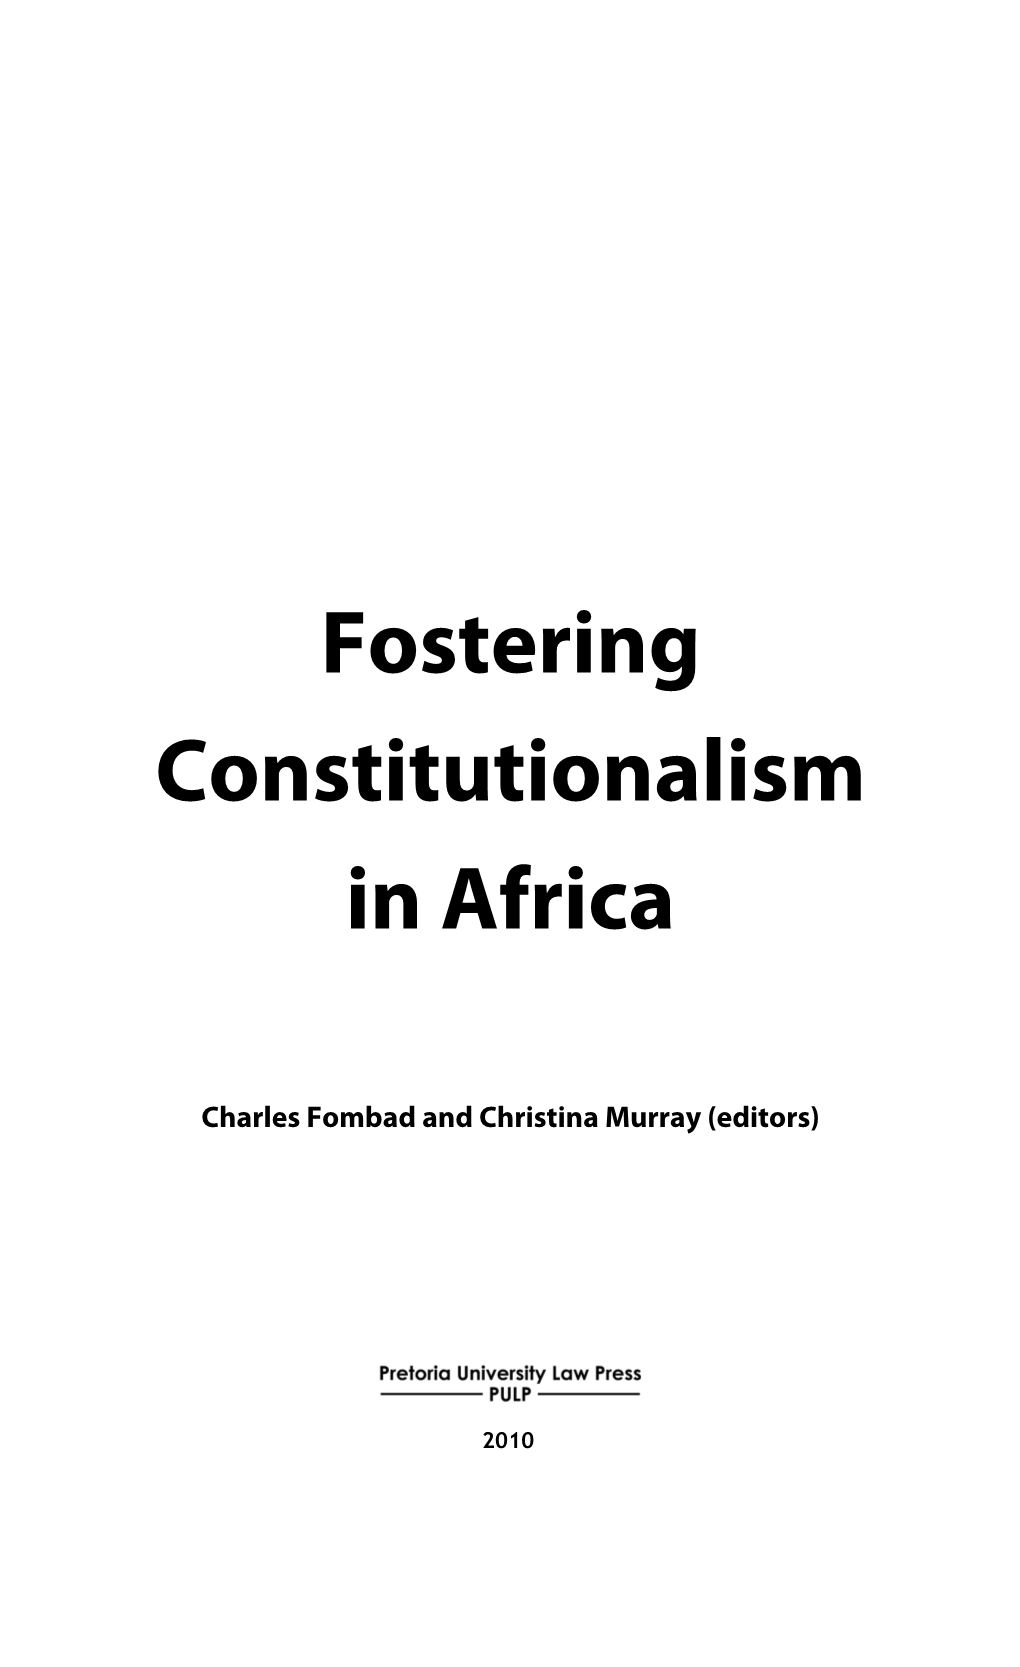 Fostering Constitutionalism in Africa